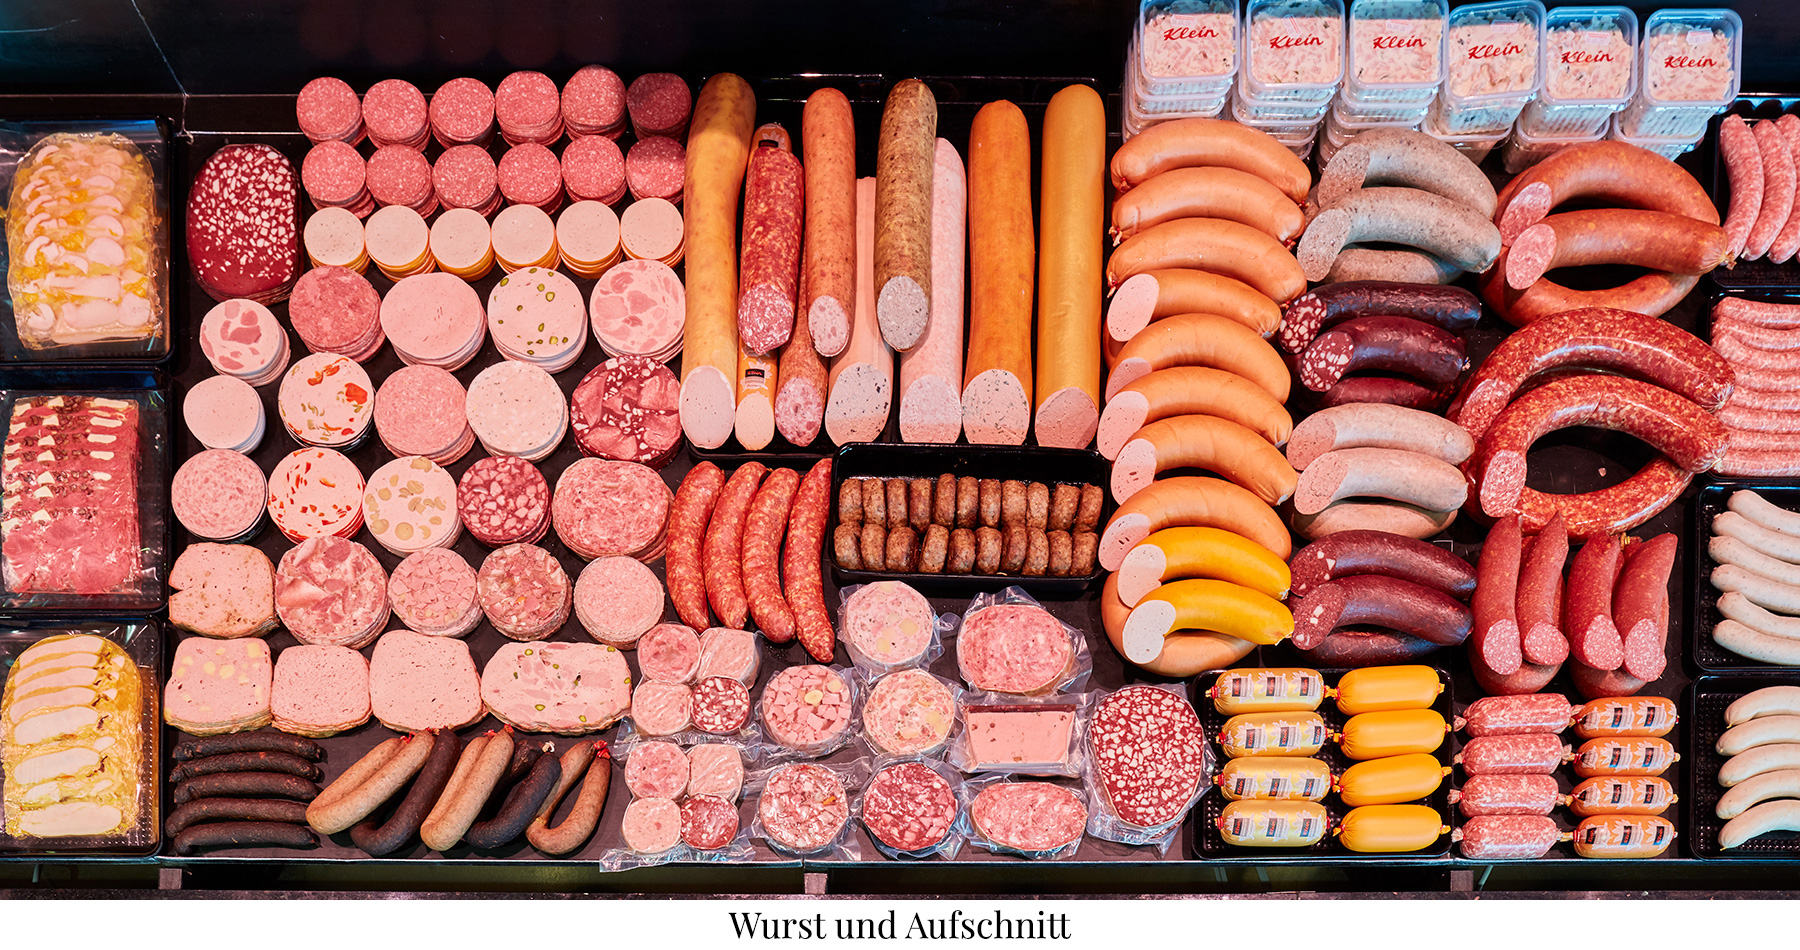 Das Bild zeigt eine Fleischtheke mit Grillwurst